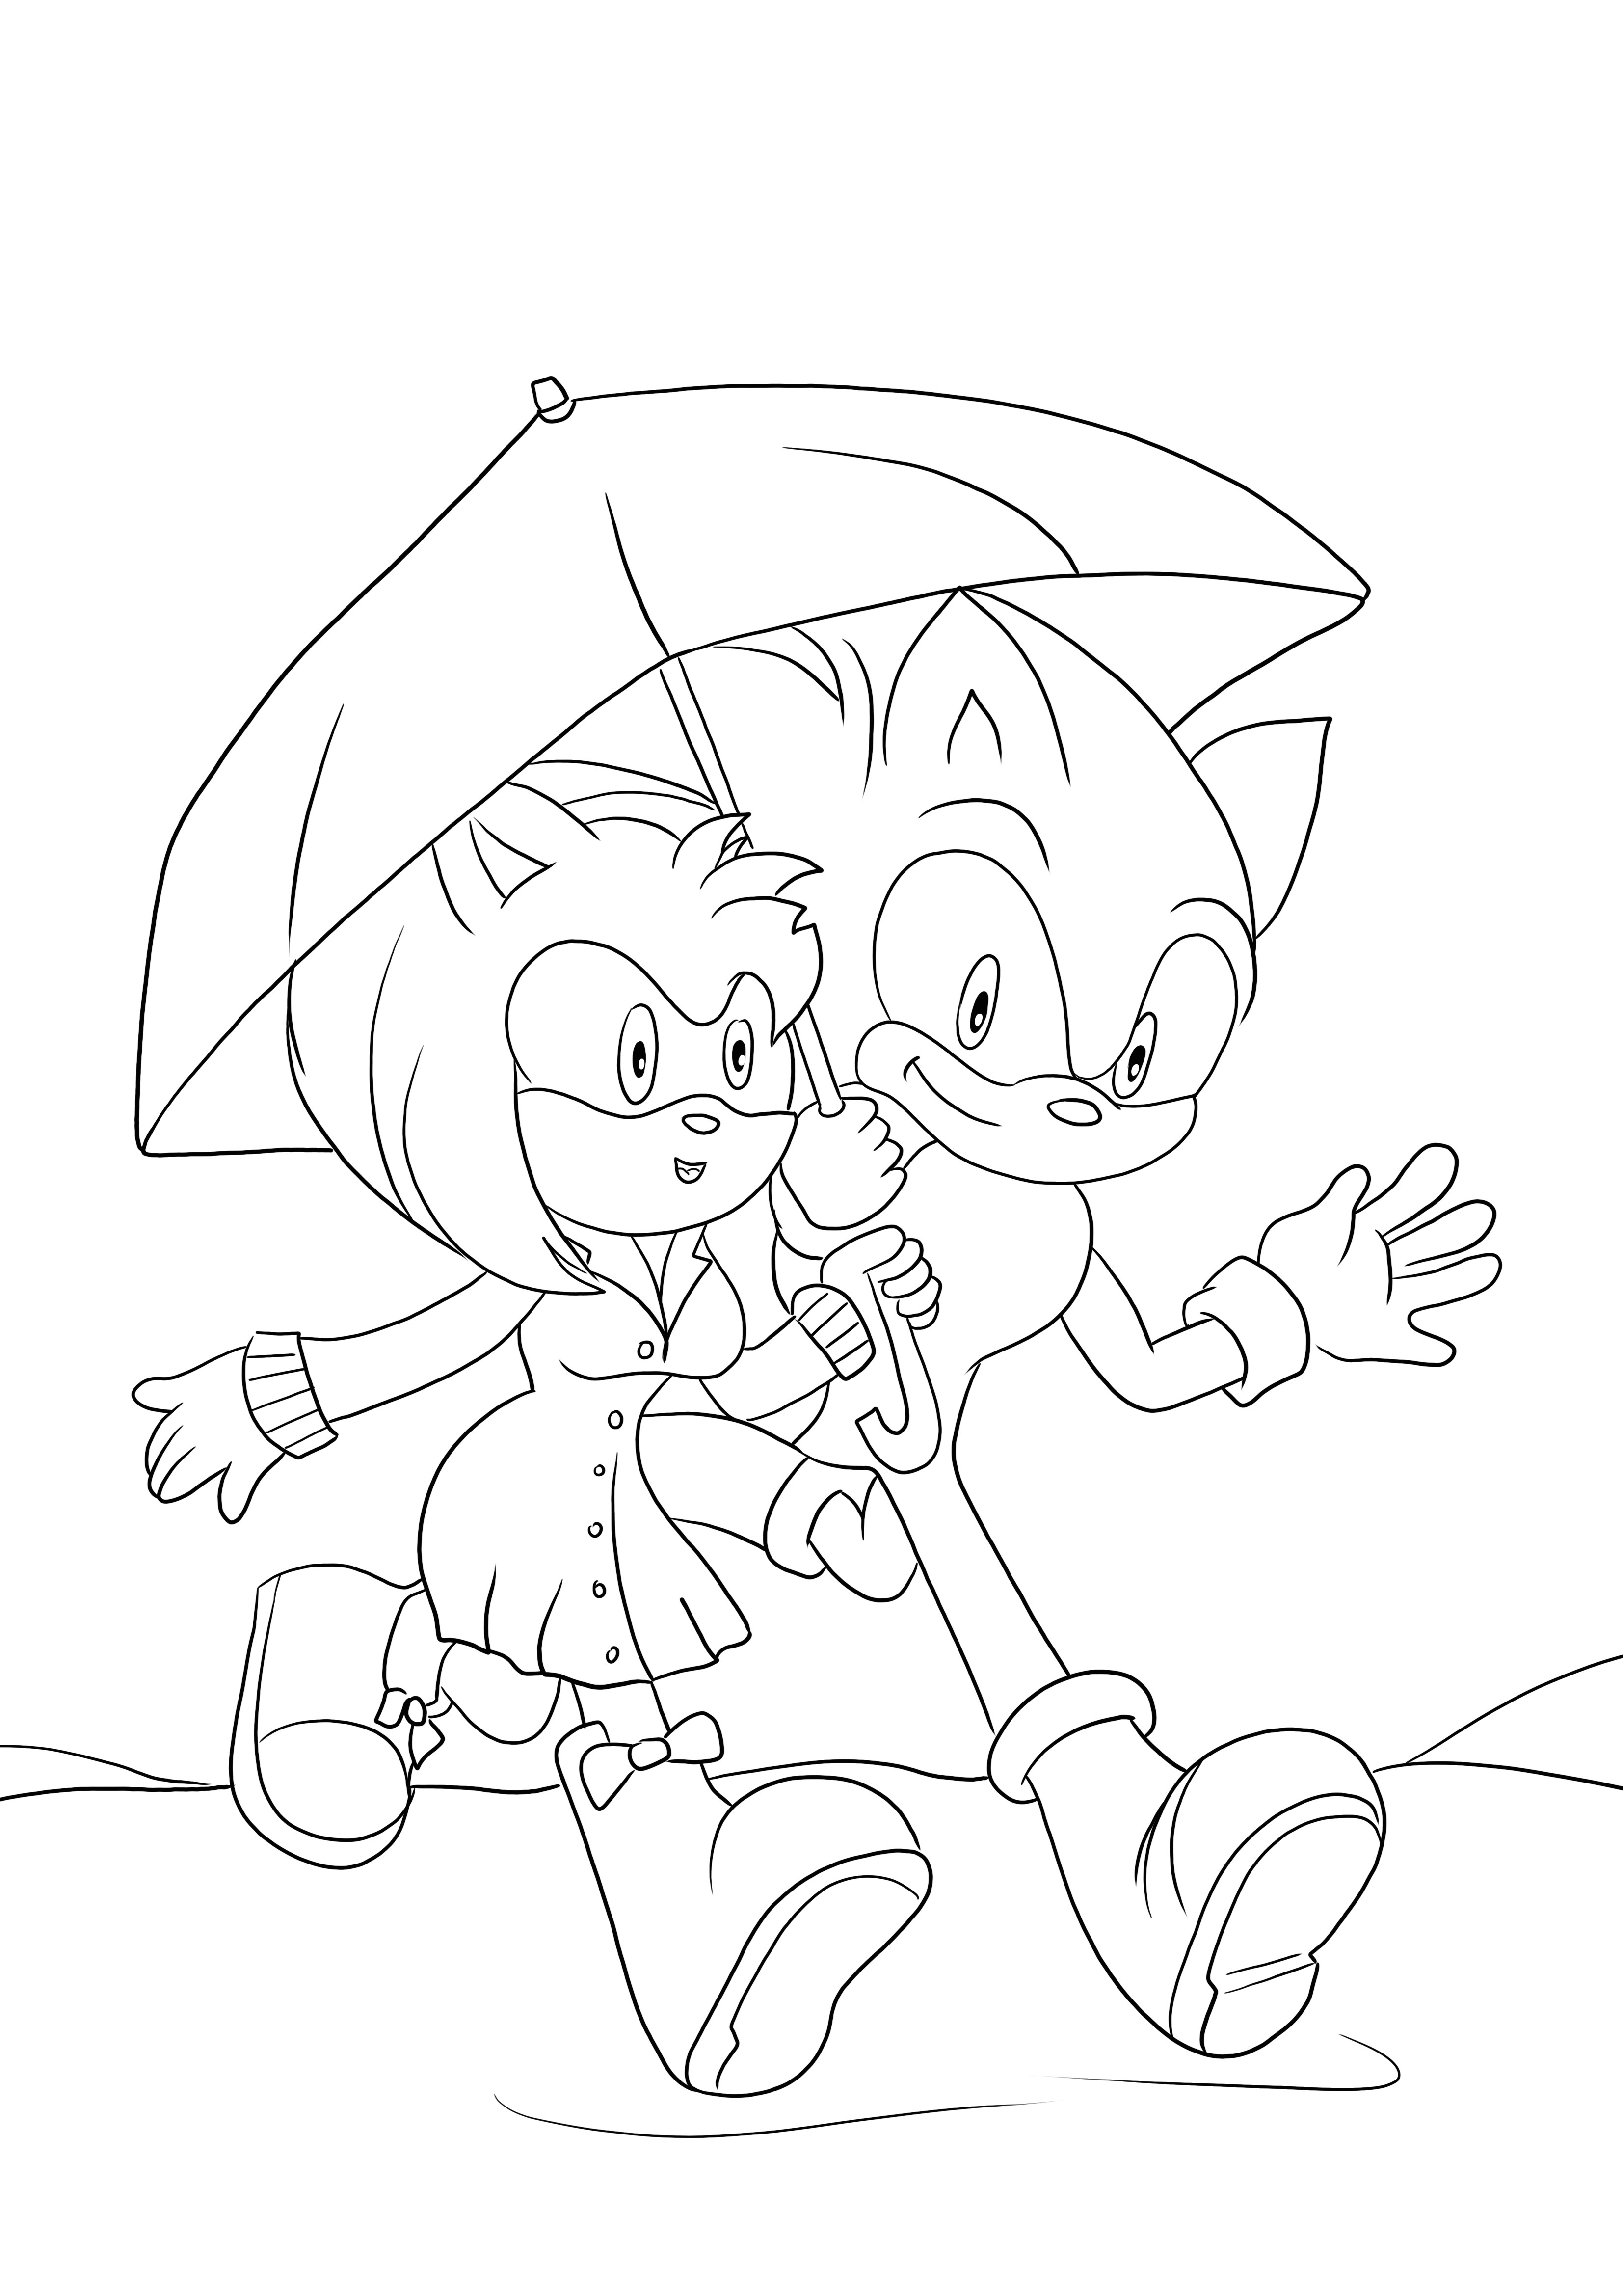 Amy Rose ve Sonic şemsiyesi altında çocuklar için ücretsiz boyama ve baskı sayfası